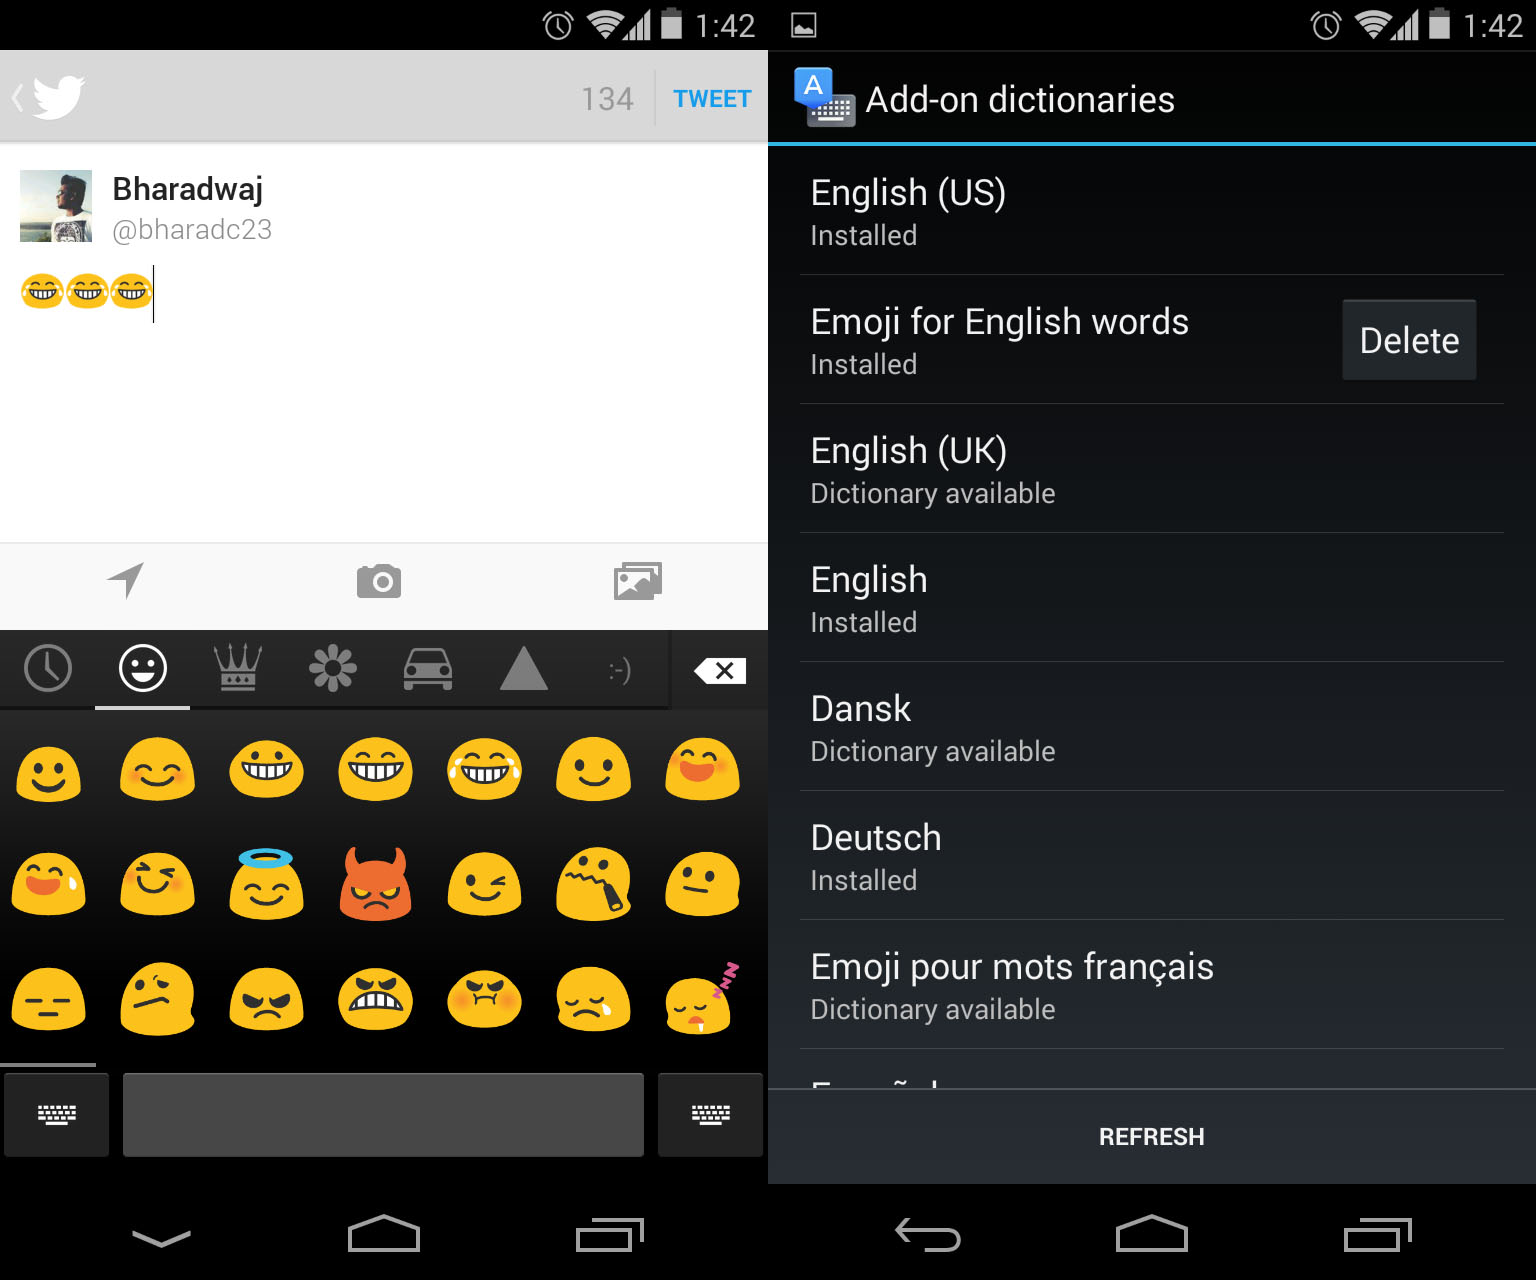 Android 4.4 KitKat emoji keyboard